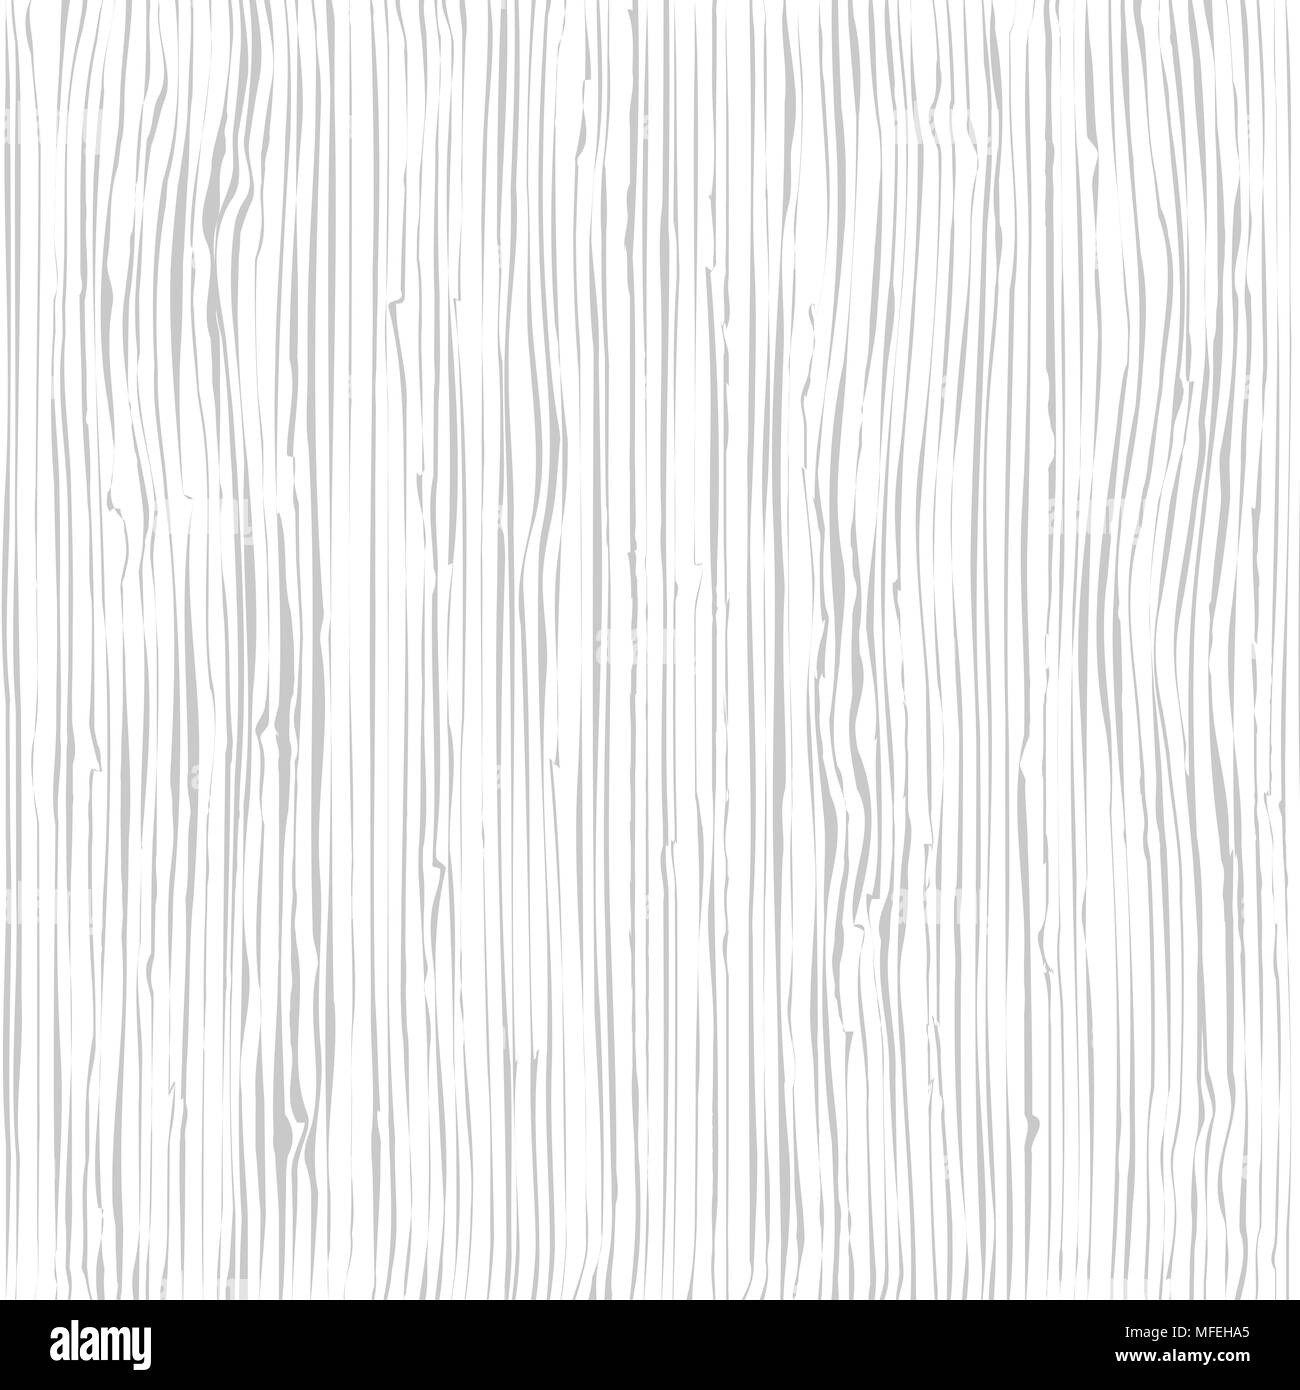 Holz Textur. Holz Maserung. Fasern Struktur Hintergrund, Vector Illustration Stock Vektor